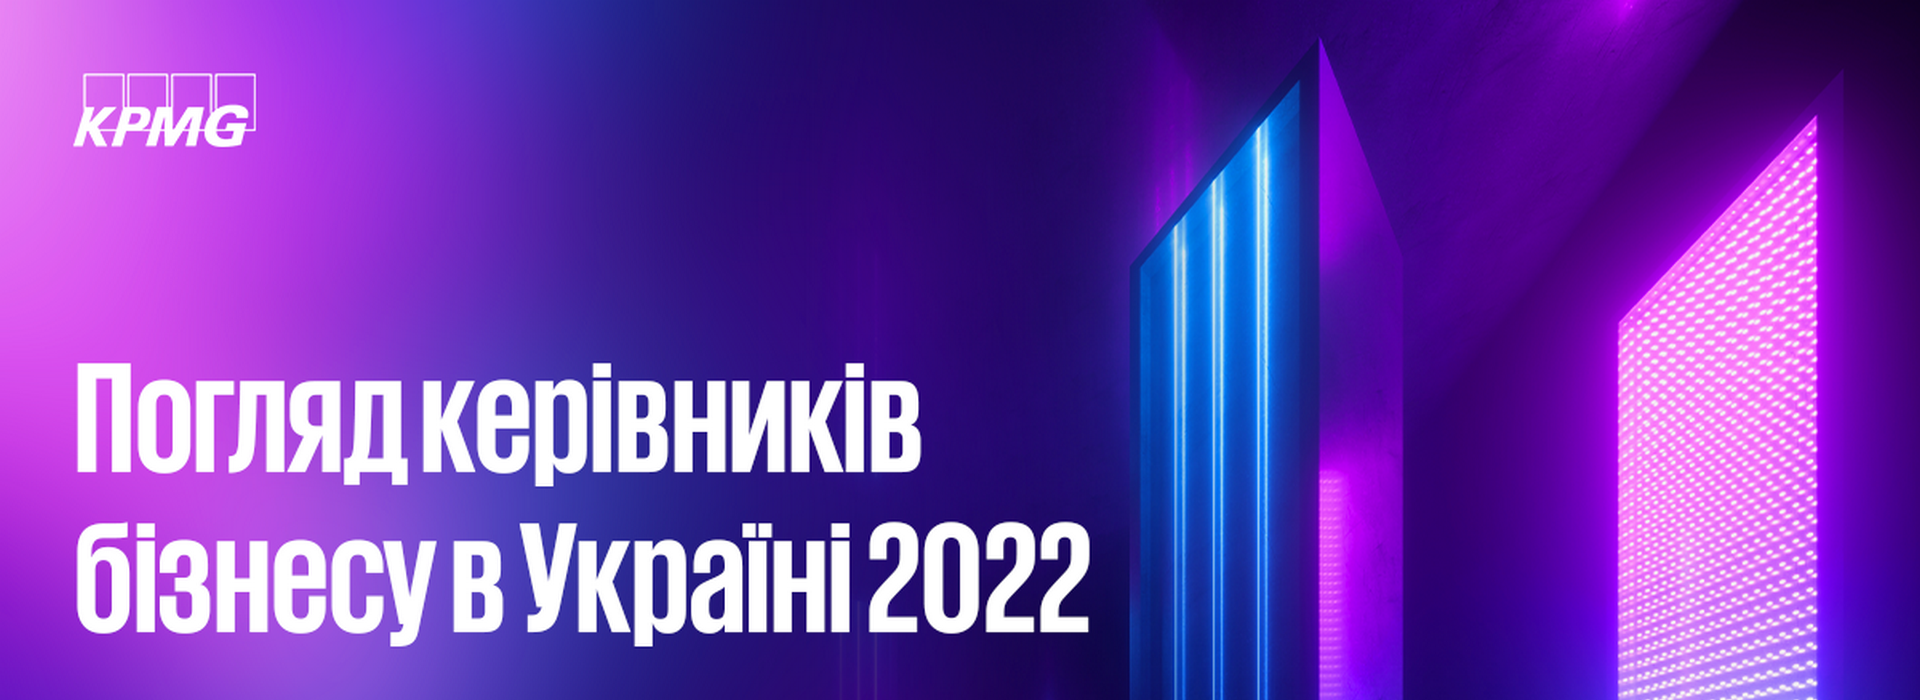 Щорічне опитування 2022 «Погляд керівників бізнесу в Україні 2022»